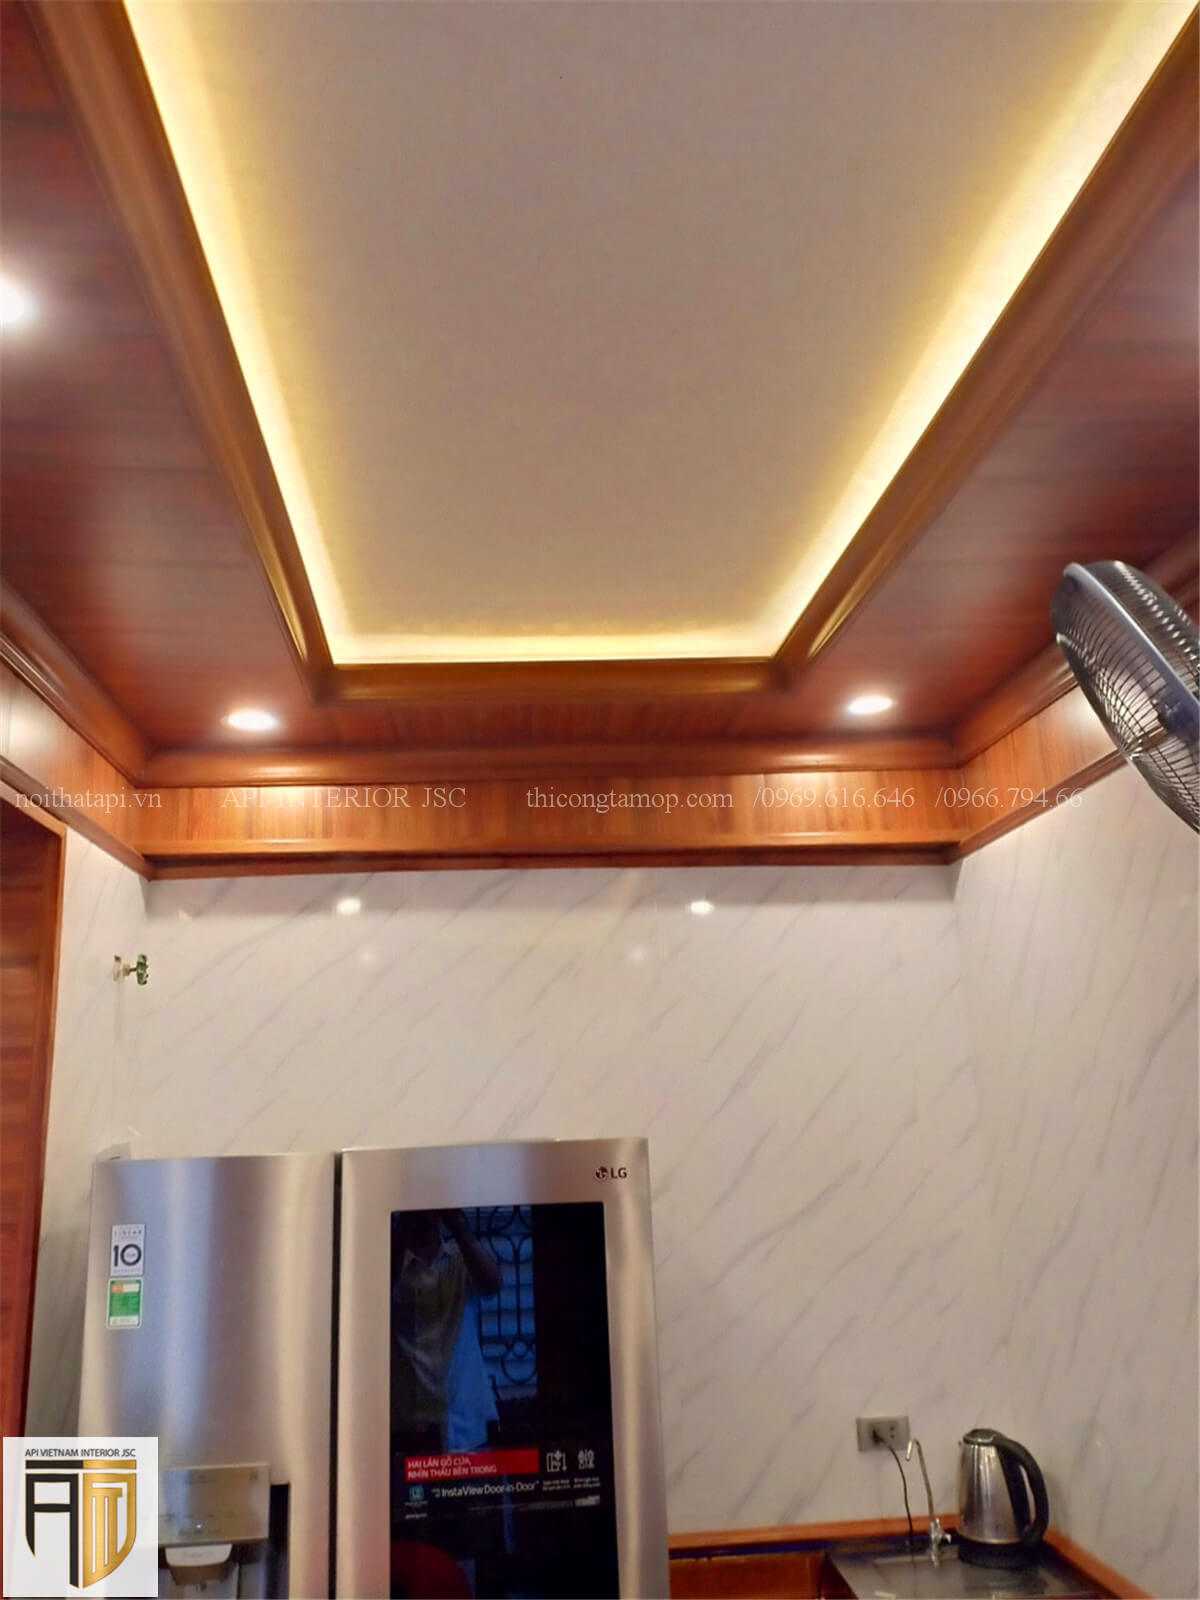 Thi công thiết kế phòng bếp bằng tấm ốp tường PVC - 7